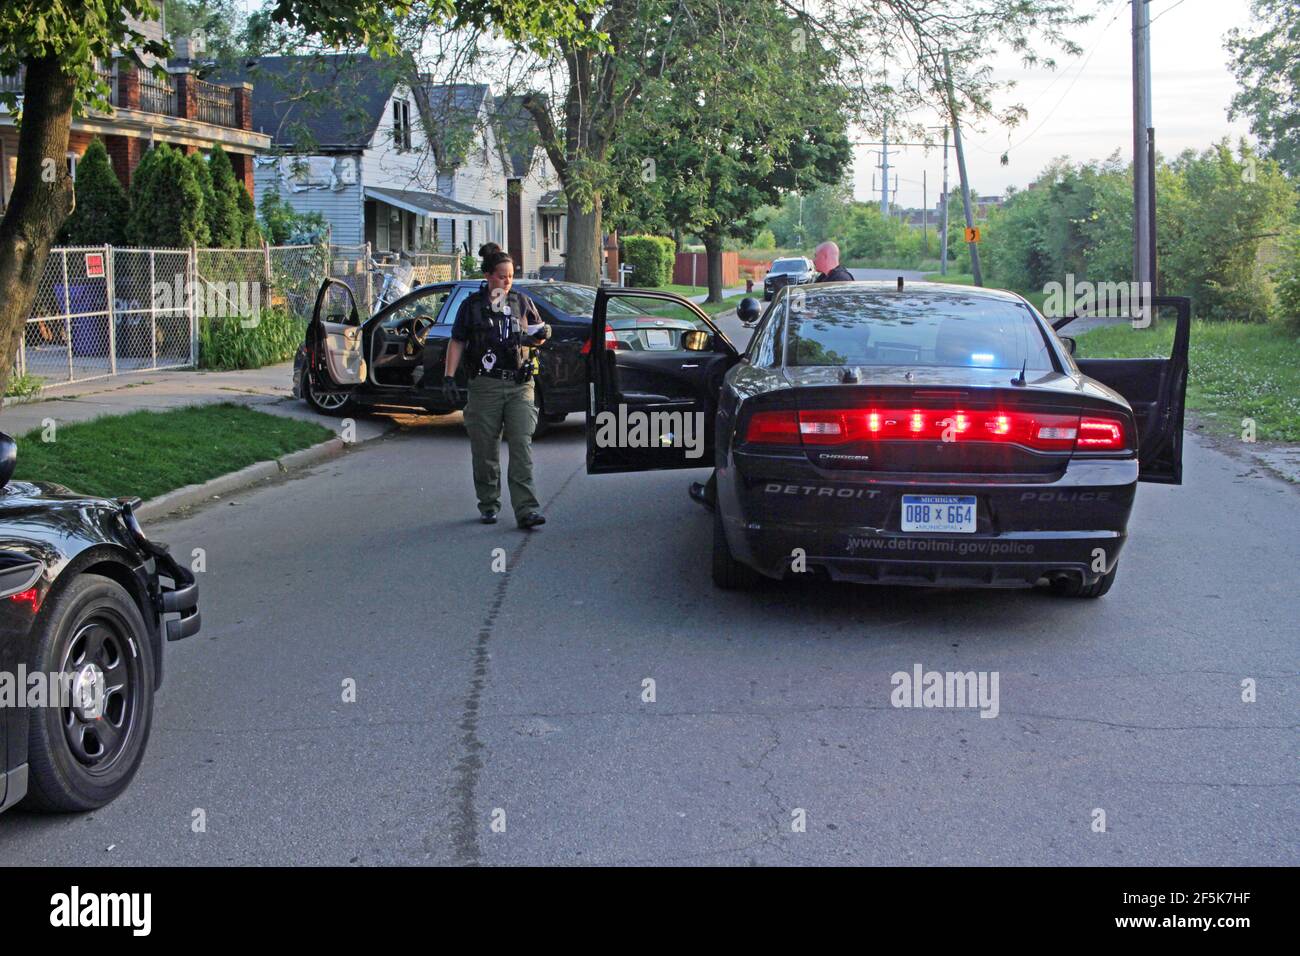 Police investigate a suspecious vehcile in Detroit, Michigan, USA Stock Photo